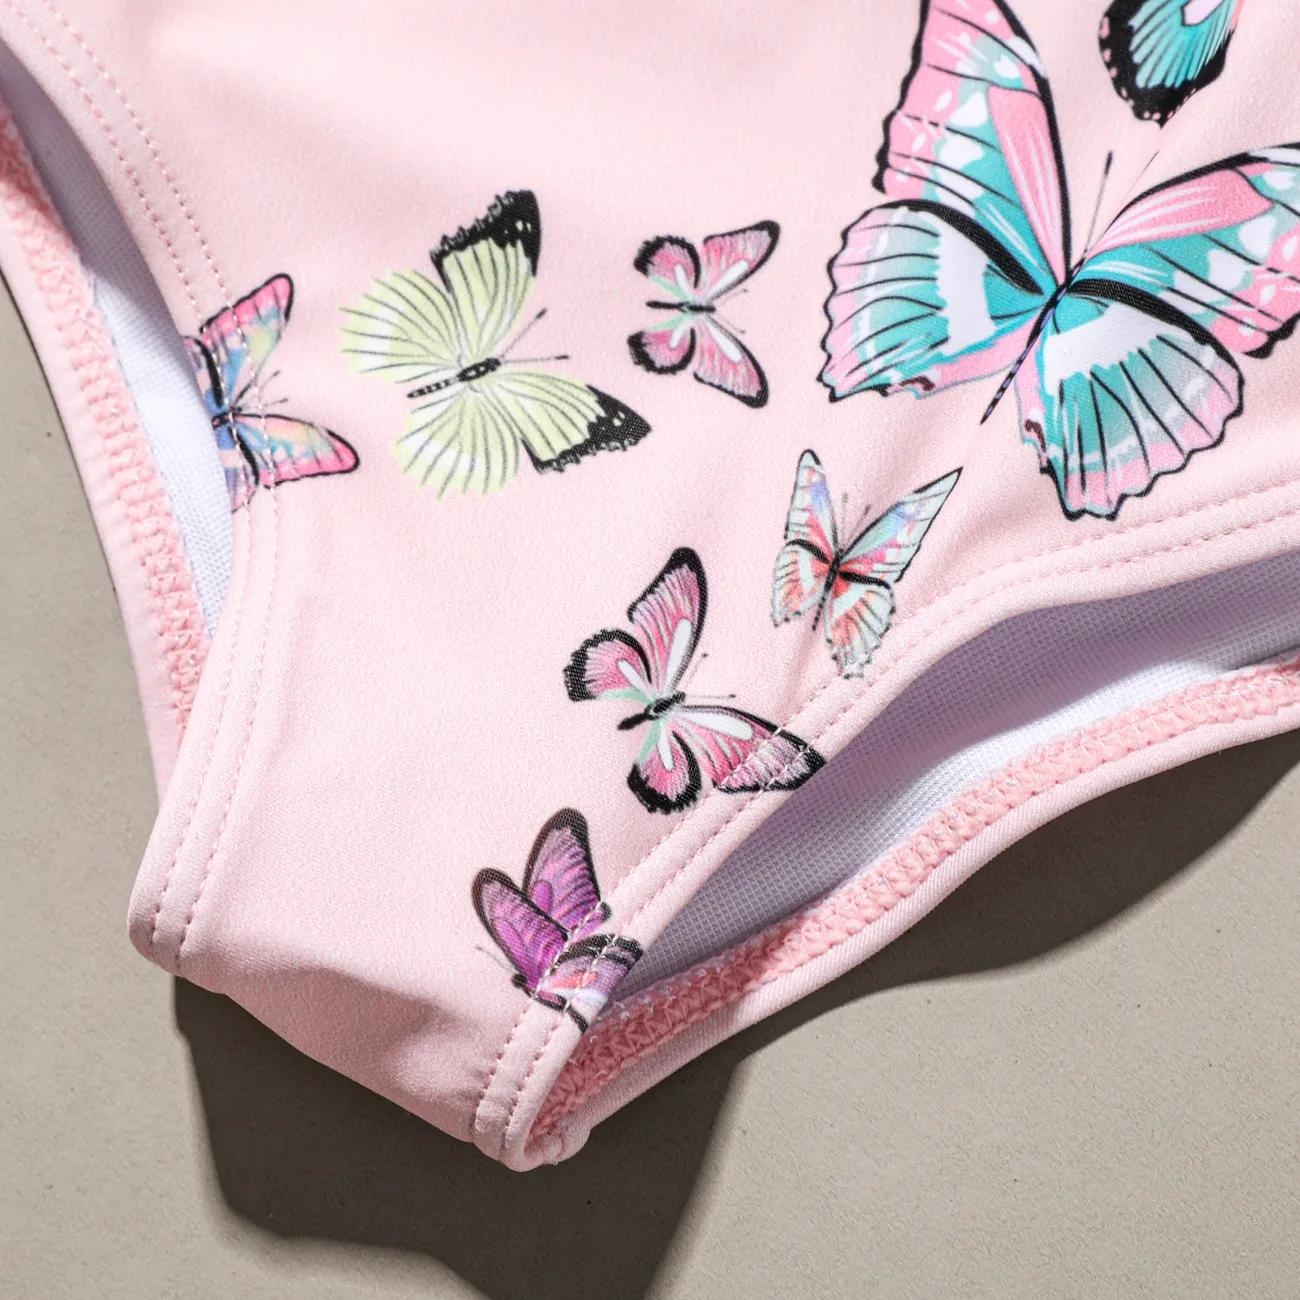 2 Stück Baby Mädchen Rüschenrand Schmetterling Süß Ärmellos Badeanzüge rosa big image 1